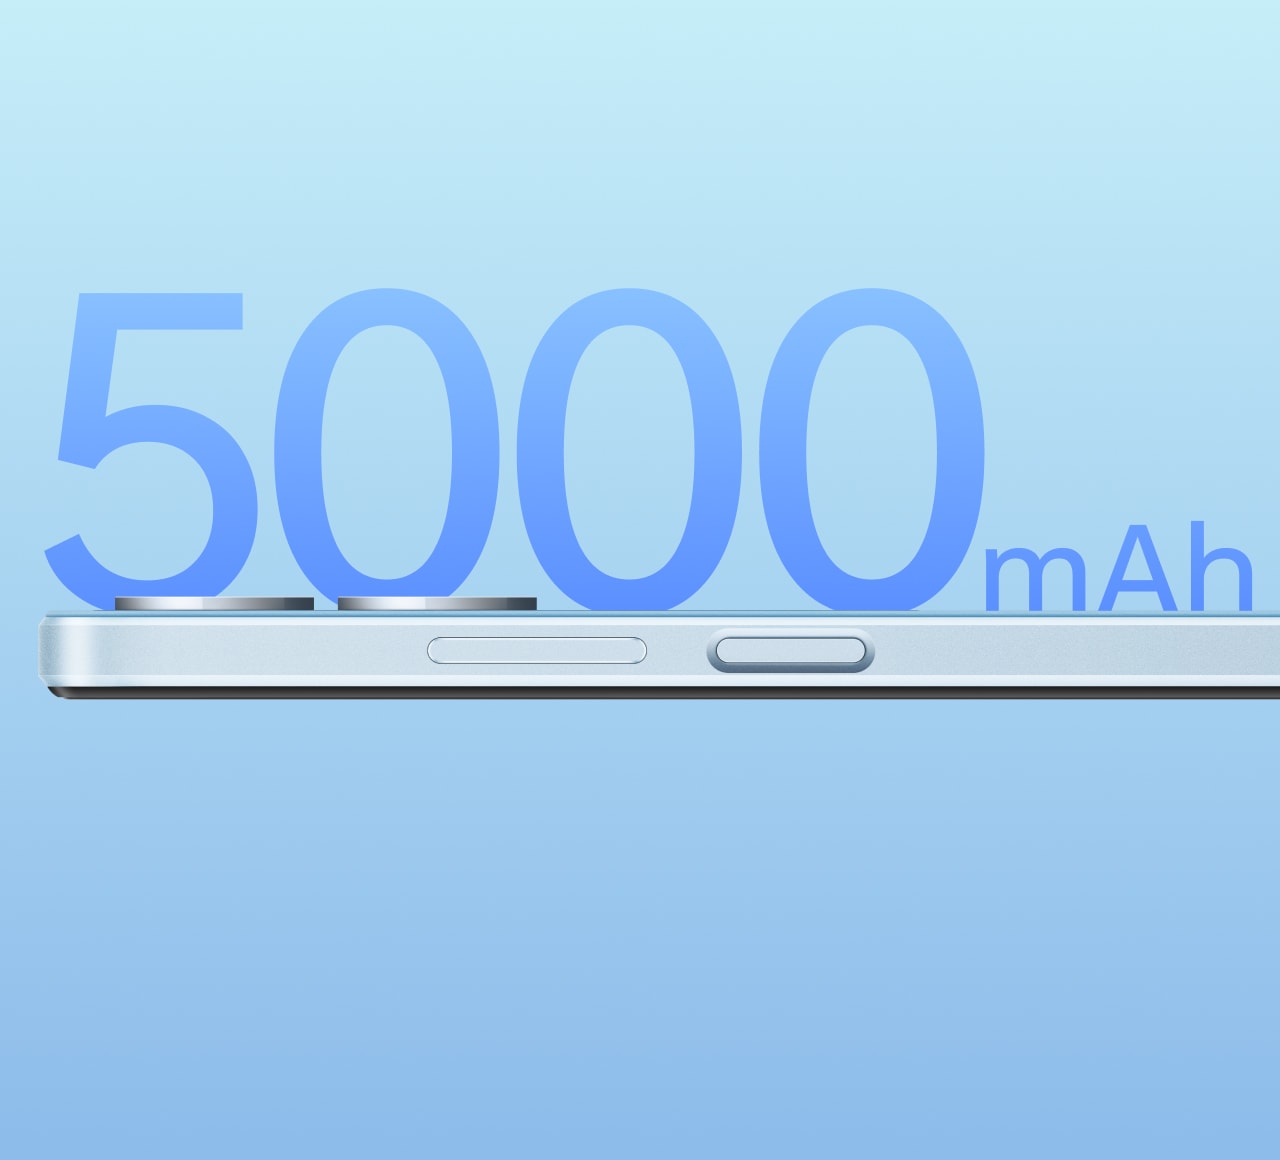 OPPO 5000mAh Long-Lasting Battery